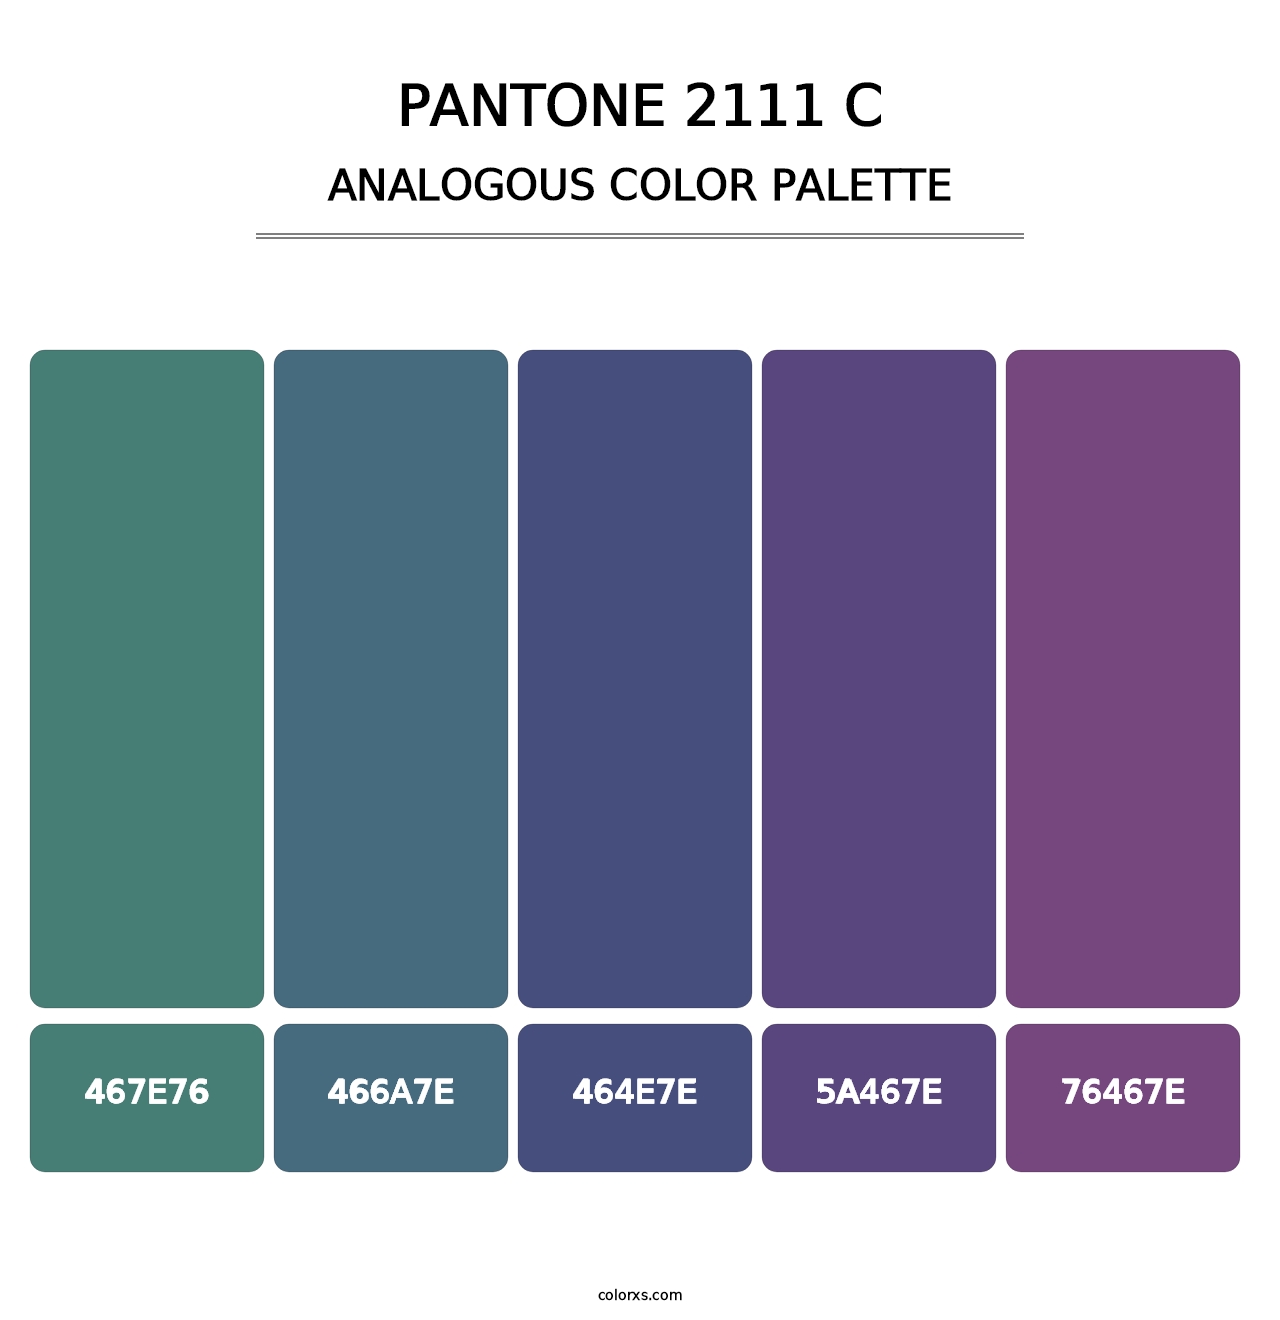 PANTONE 2111 C - Analogous Color Palette